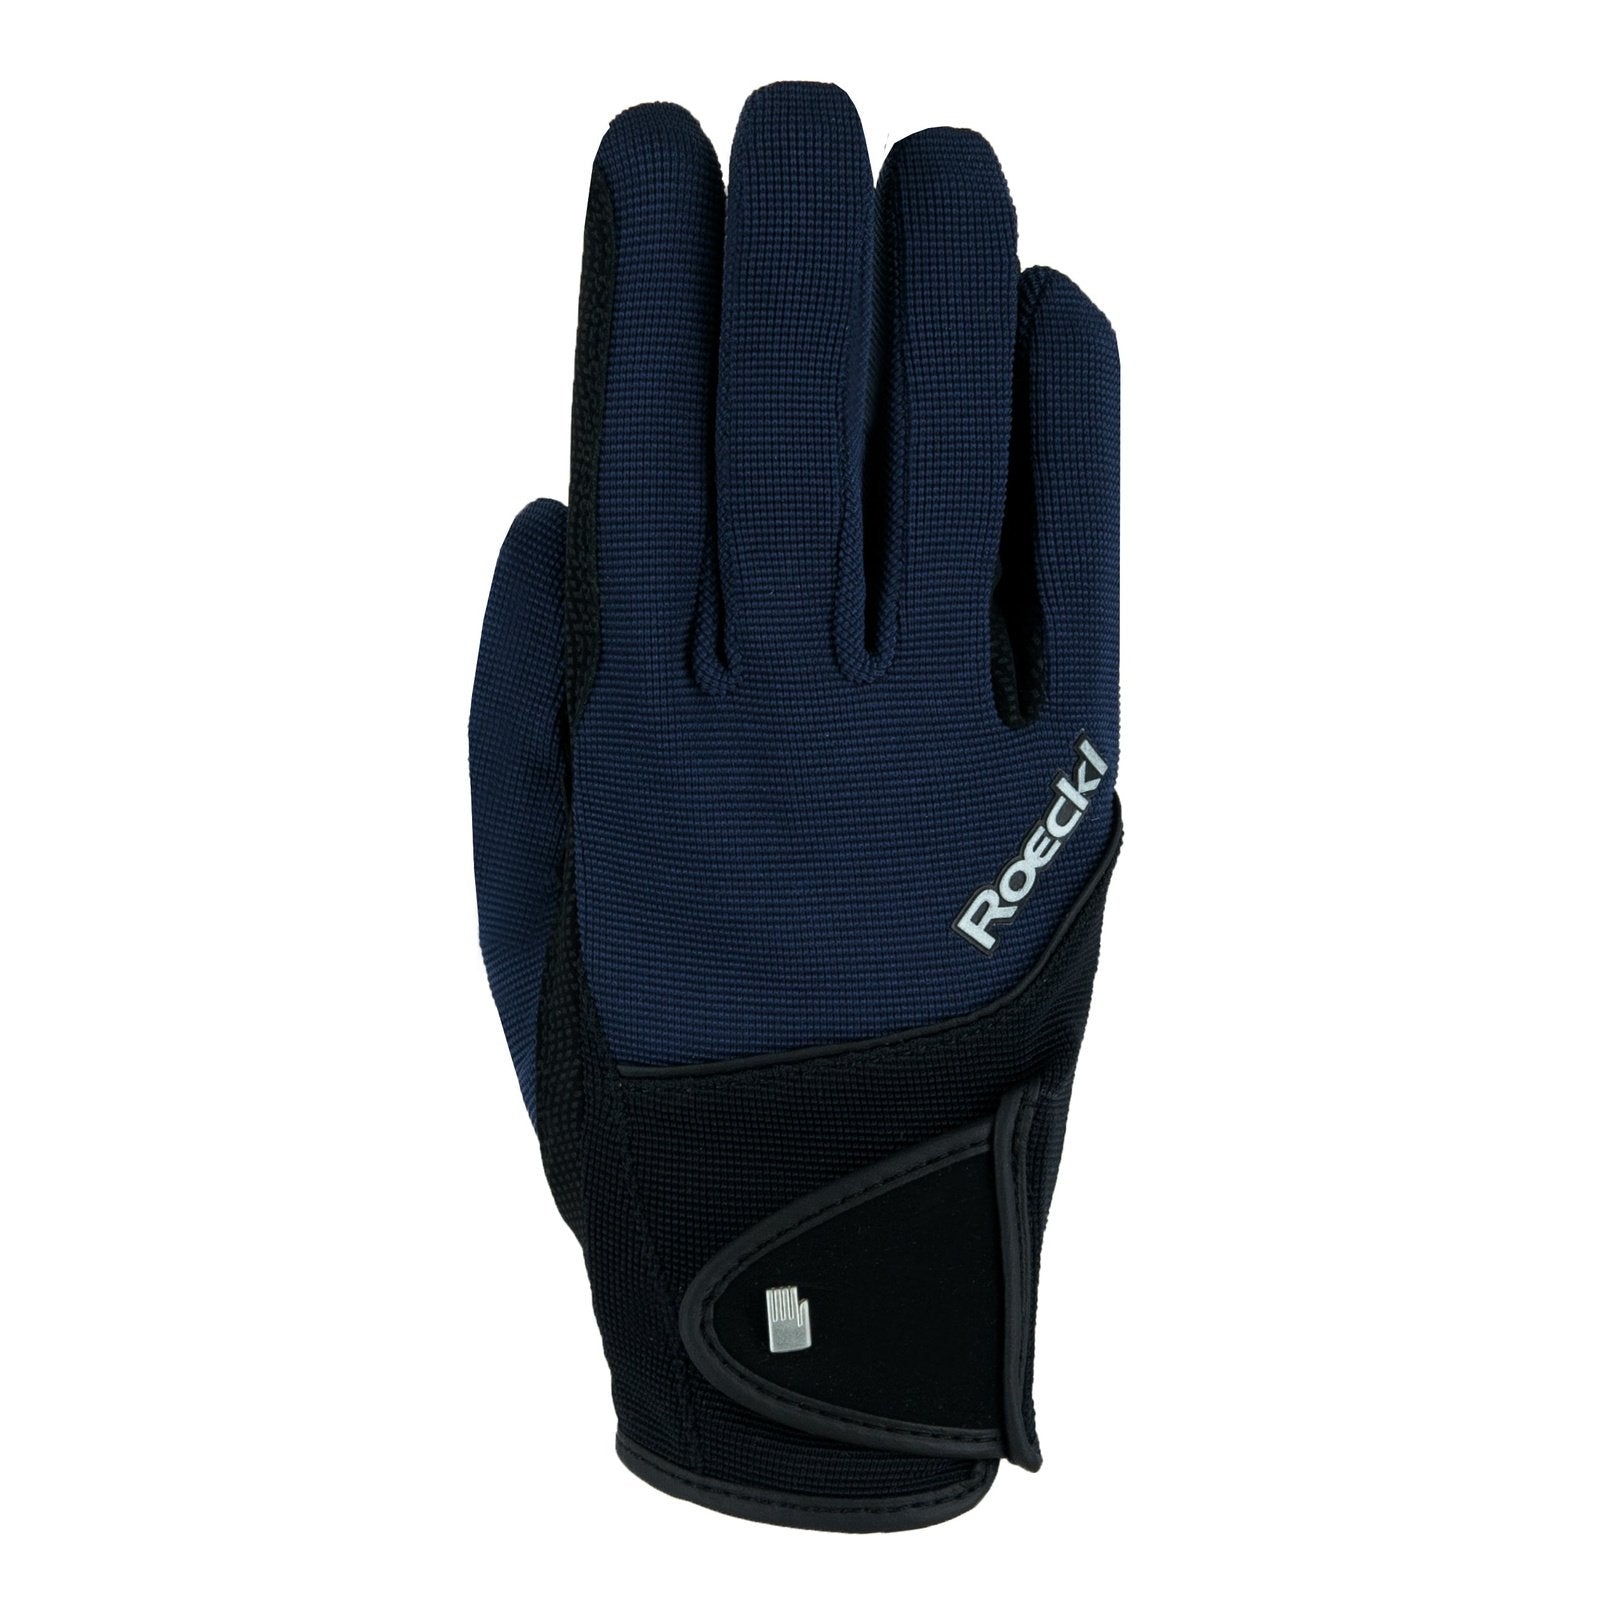 Roeckl Handschuhe Milano Winter bei SP-Reitsport